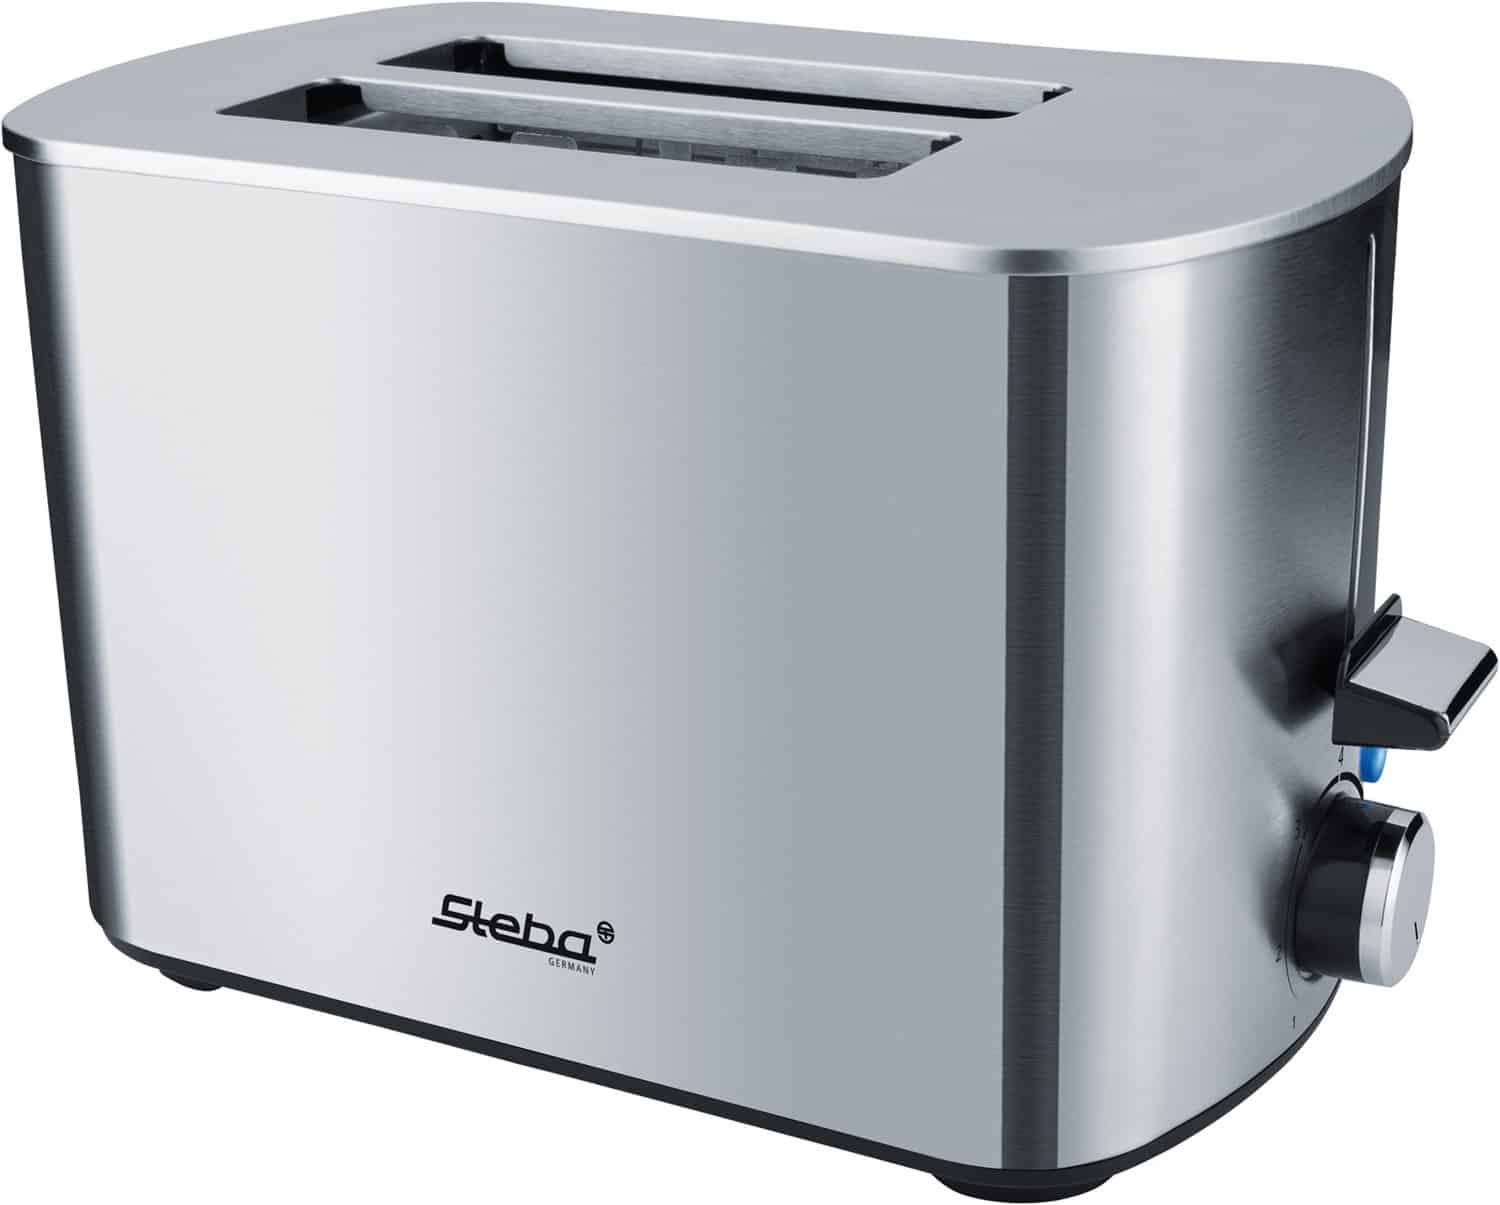 Steba TO 20 Inox Kompakt-Toaster edelstahl/cleansteel